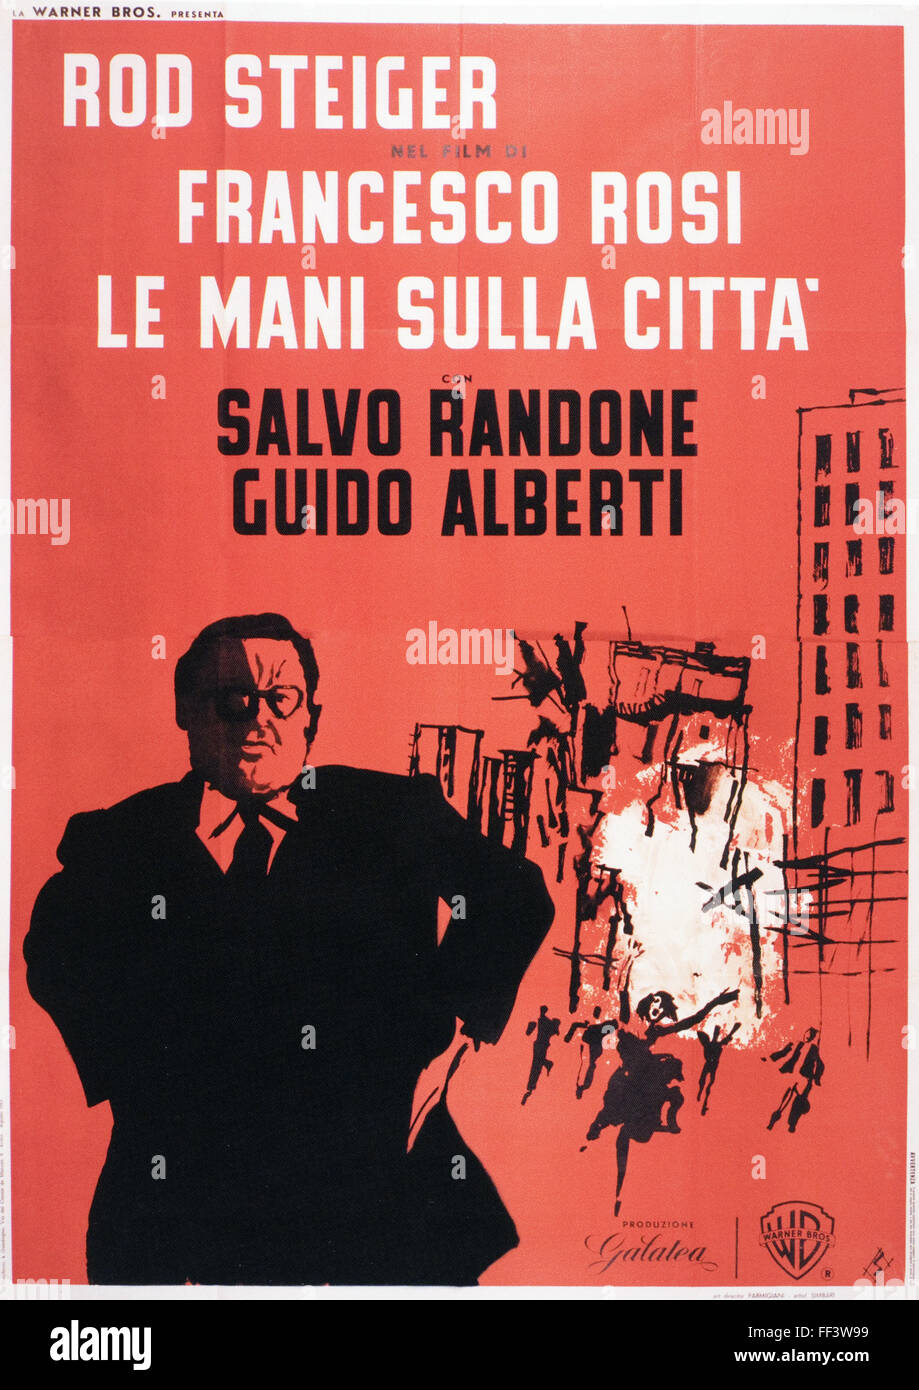 Le Mani Sulla Citta - Original Italian Movie Poster Stock Photo